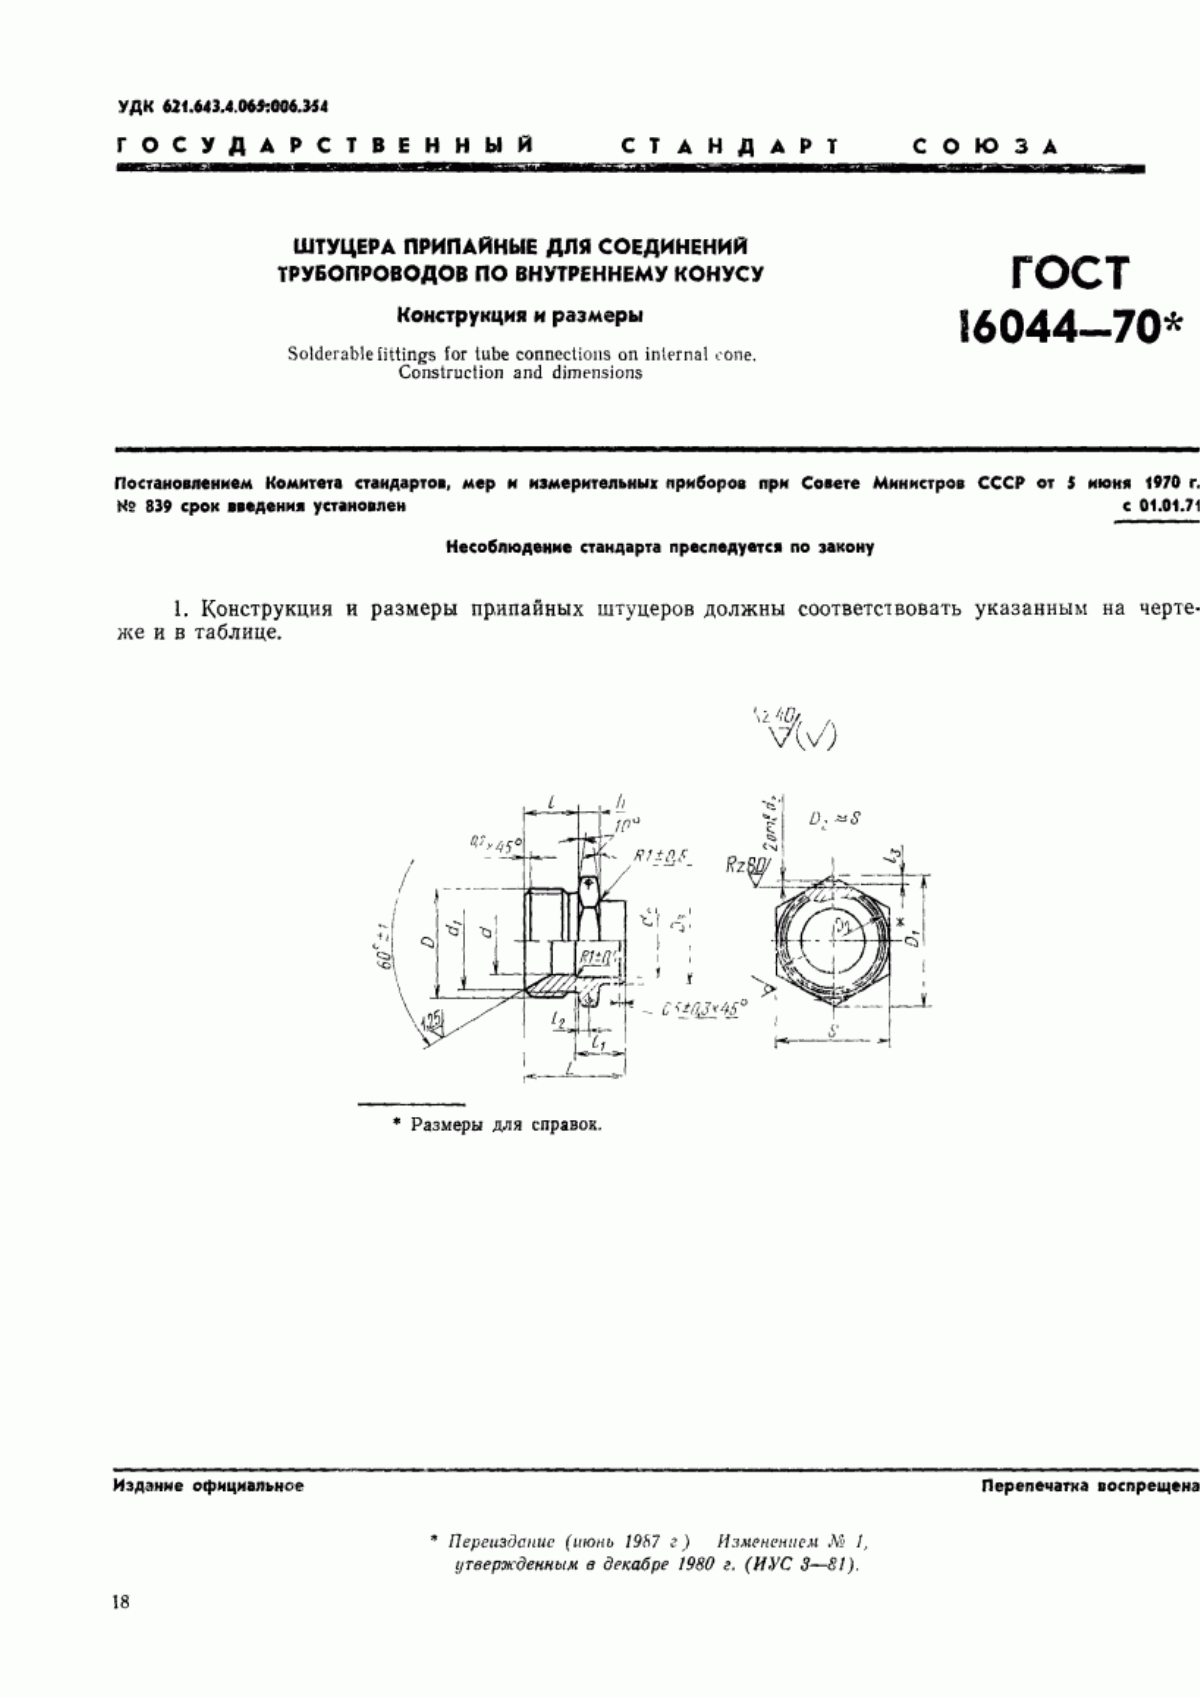 ГОСТ 16044-70 Штуцера припайные для соединений трубопроводов по внутреннему конусу. Конструкция и размеры